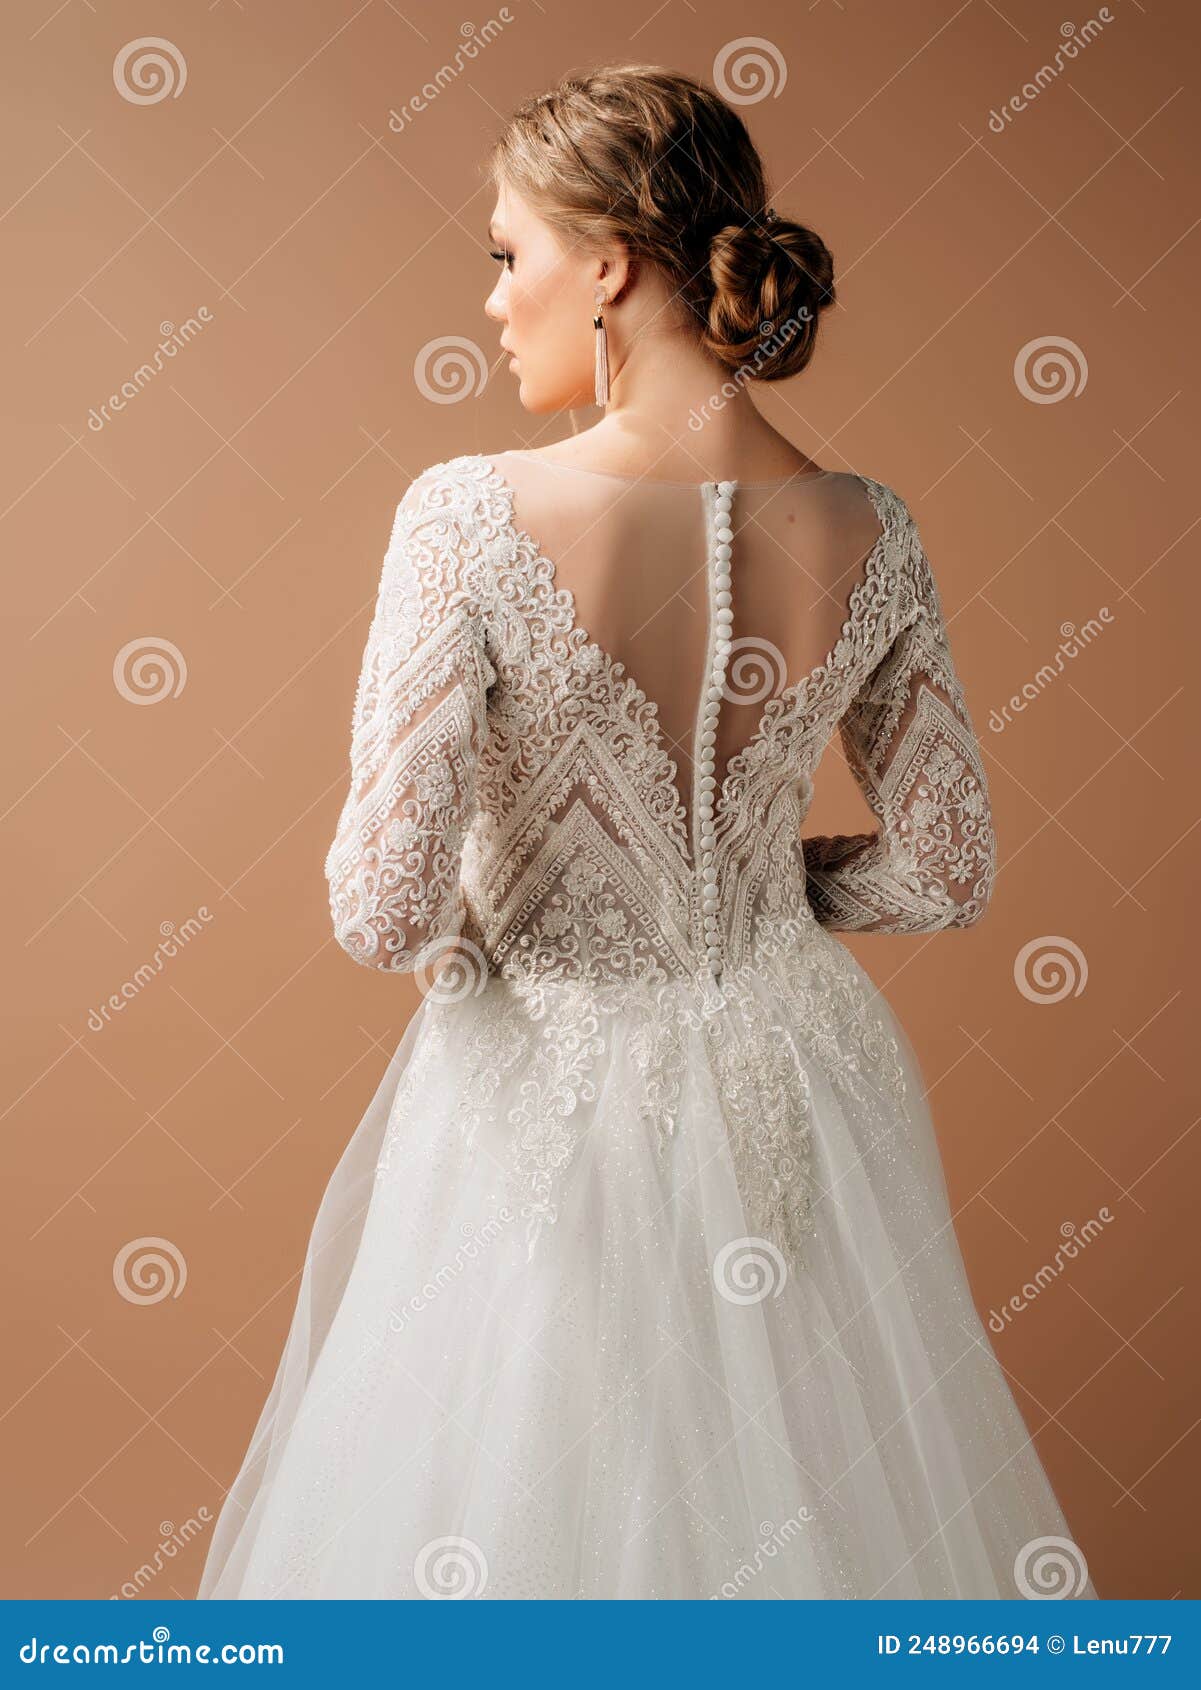 Luxury Shiny Lace Wedding Dress. Summer Backless Long Sleeve